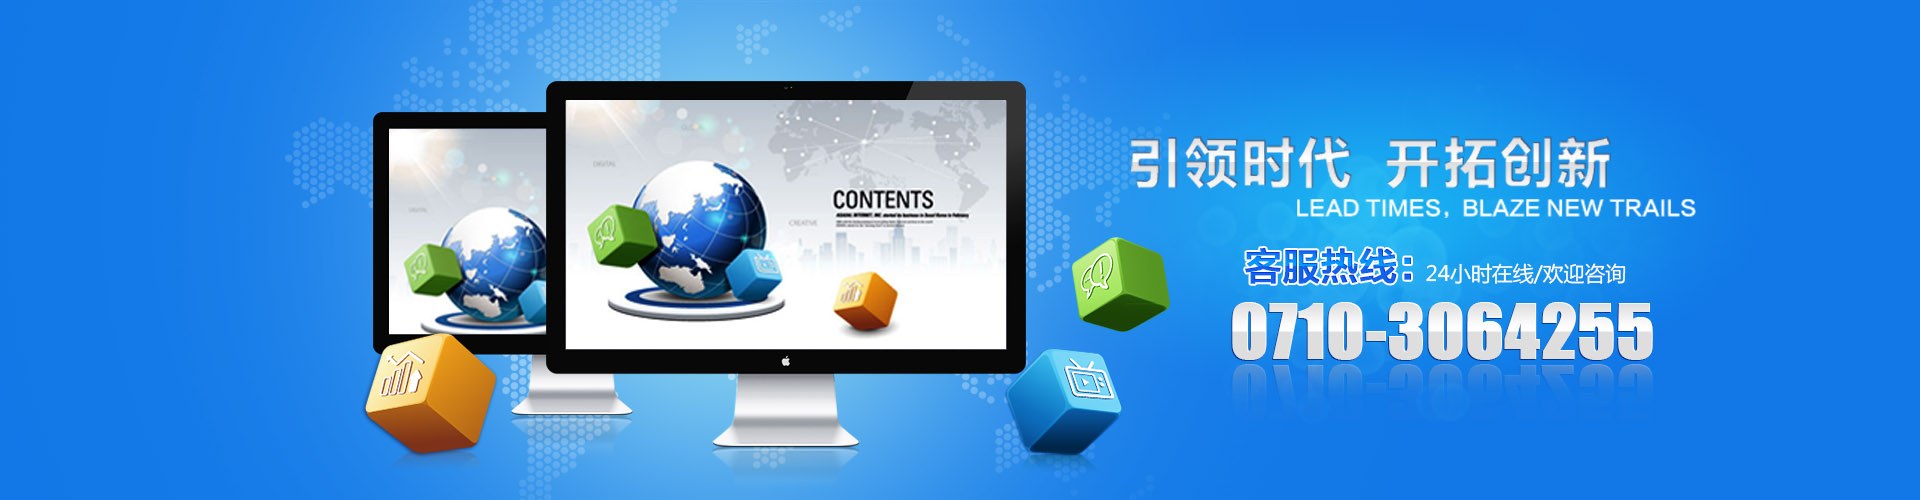 襄阳网站制作设计公司量身定制开发服务企业客户